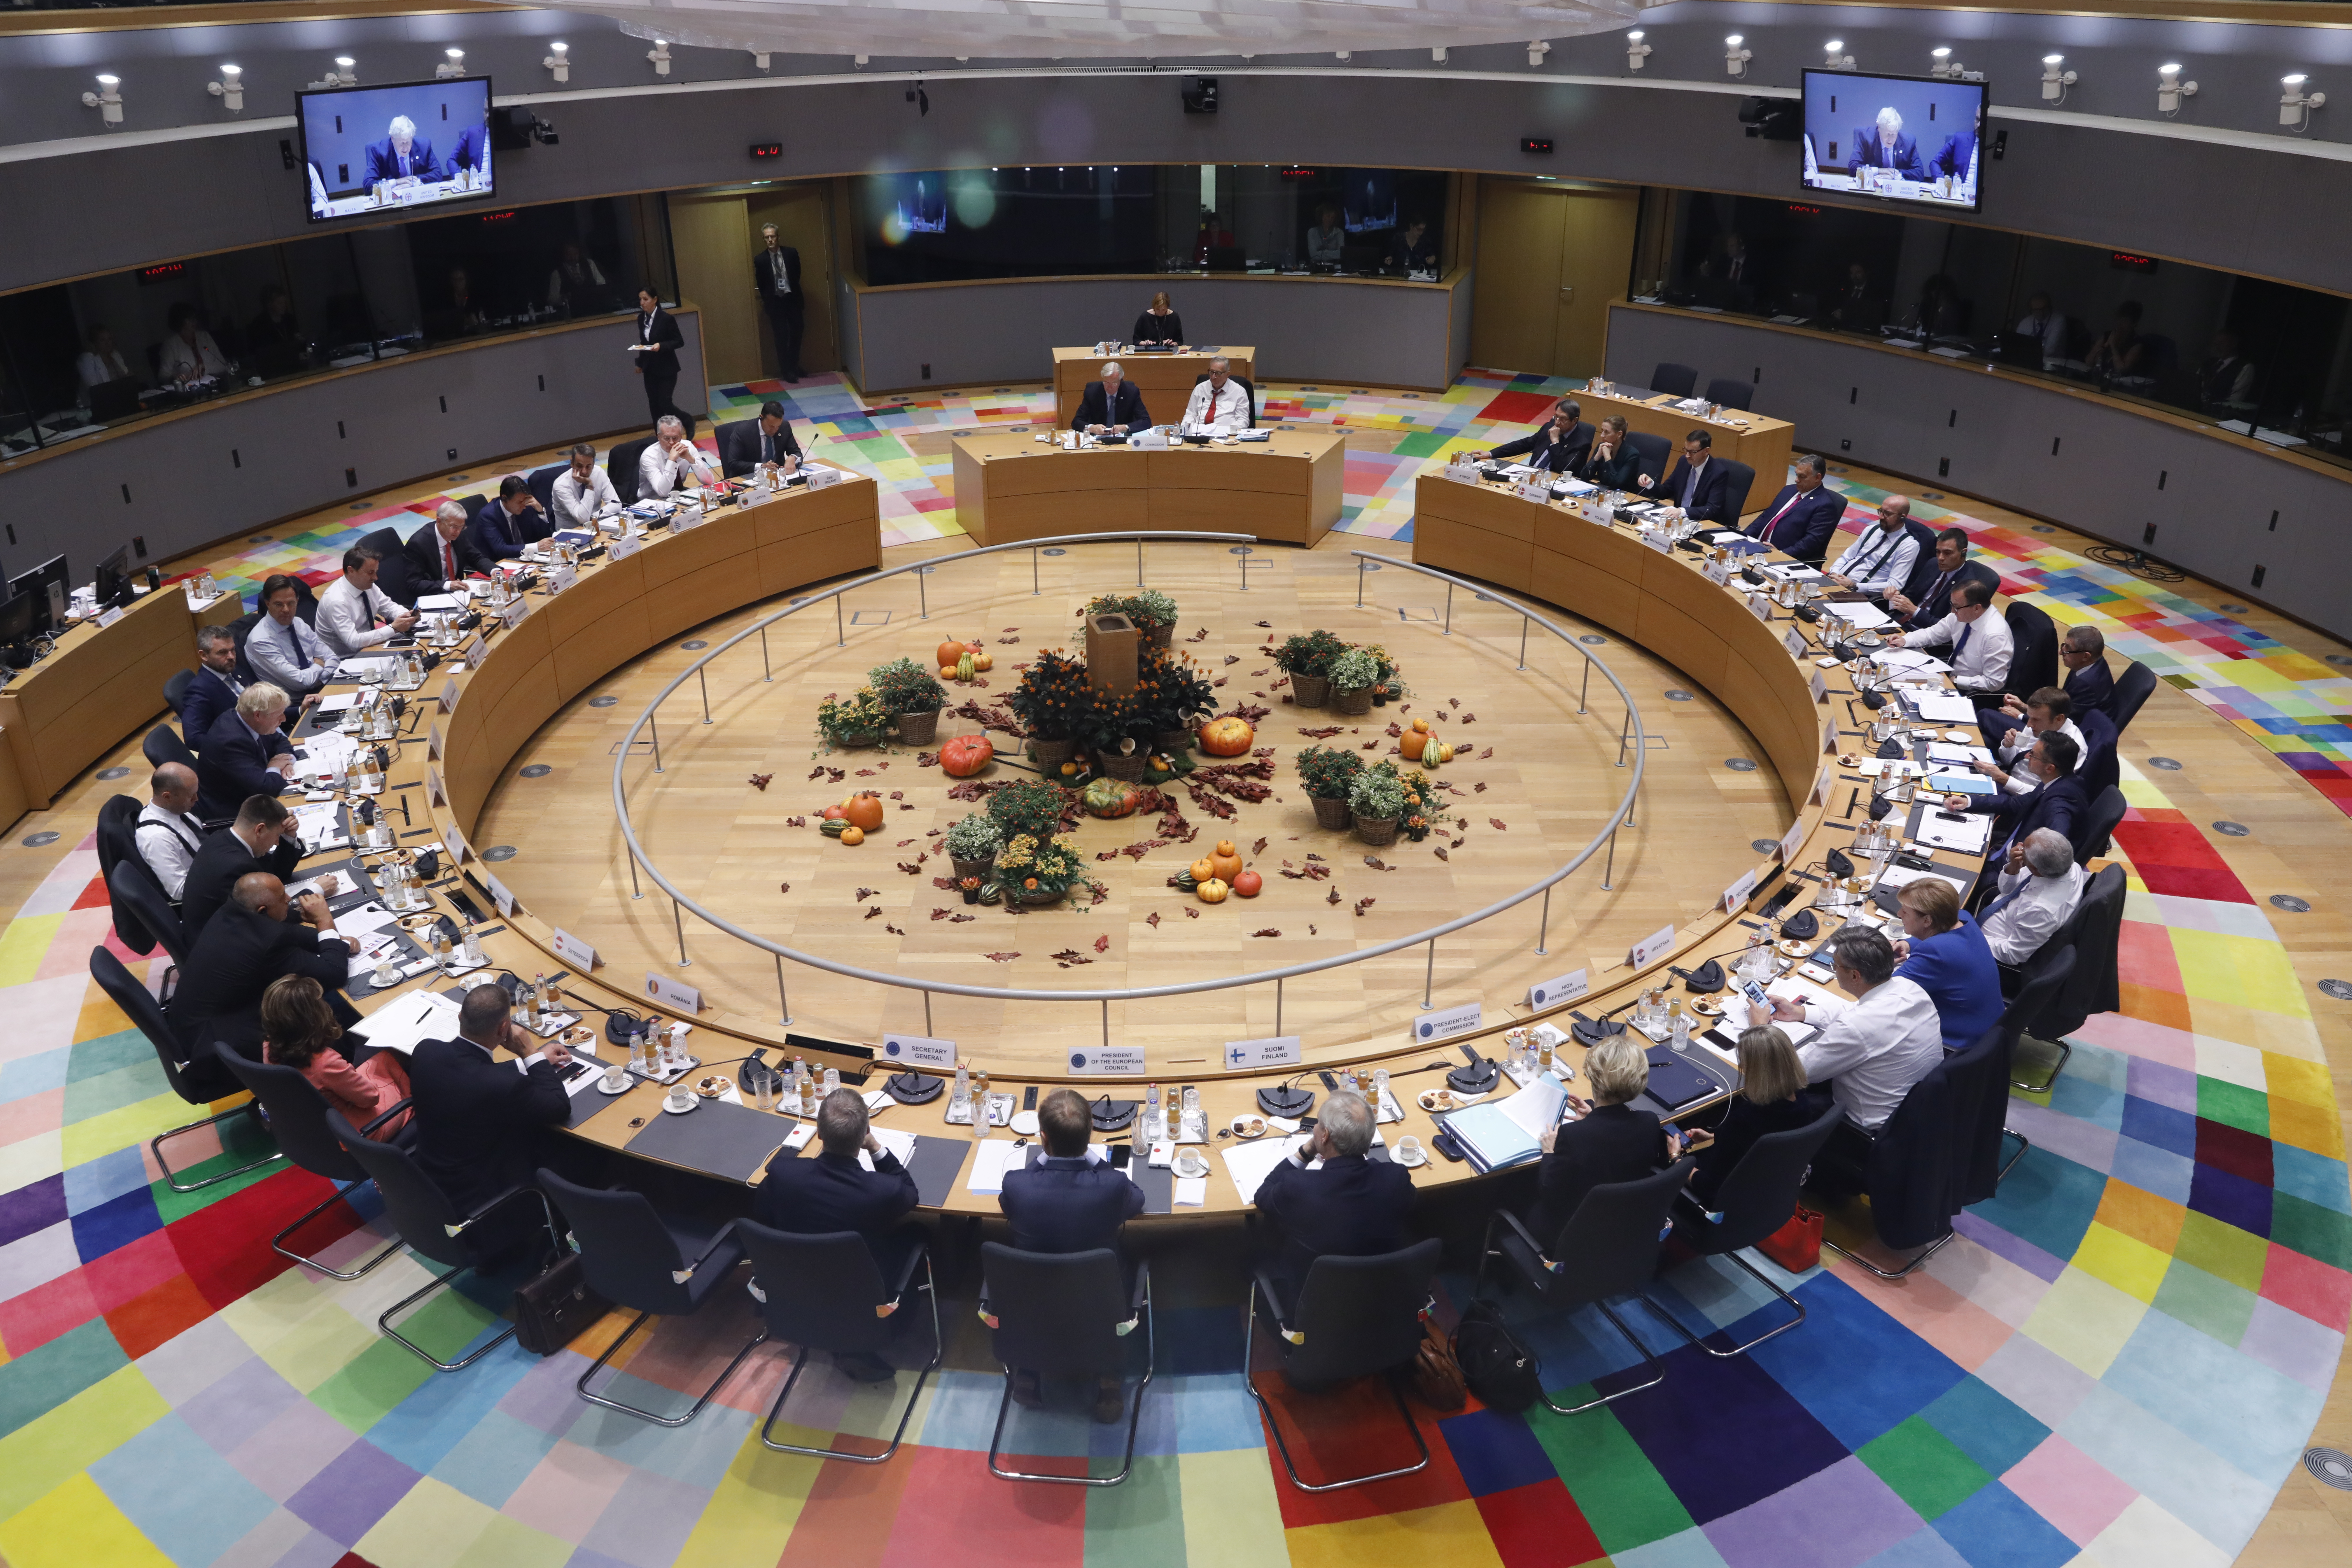 Widok sali plenarnej, w której odbywają się posiedzenia Rady Europejskij. Na zdjęciu widać okrągły stół przy których siedzą przewodniczący każdej z delagacji